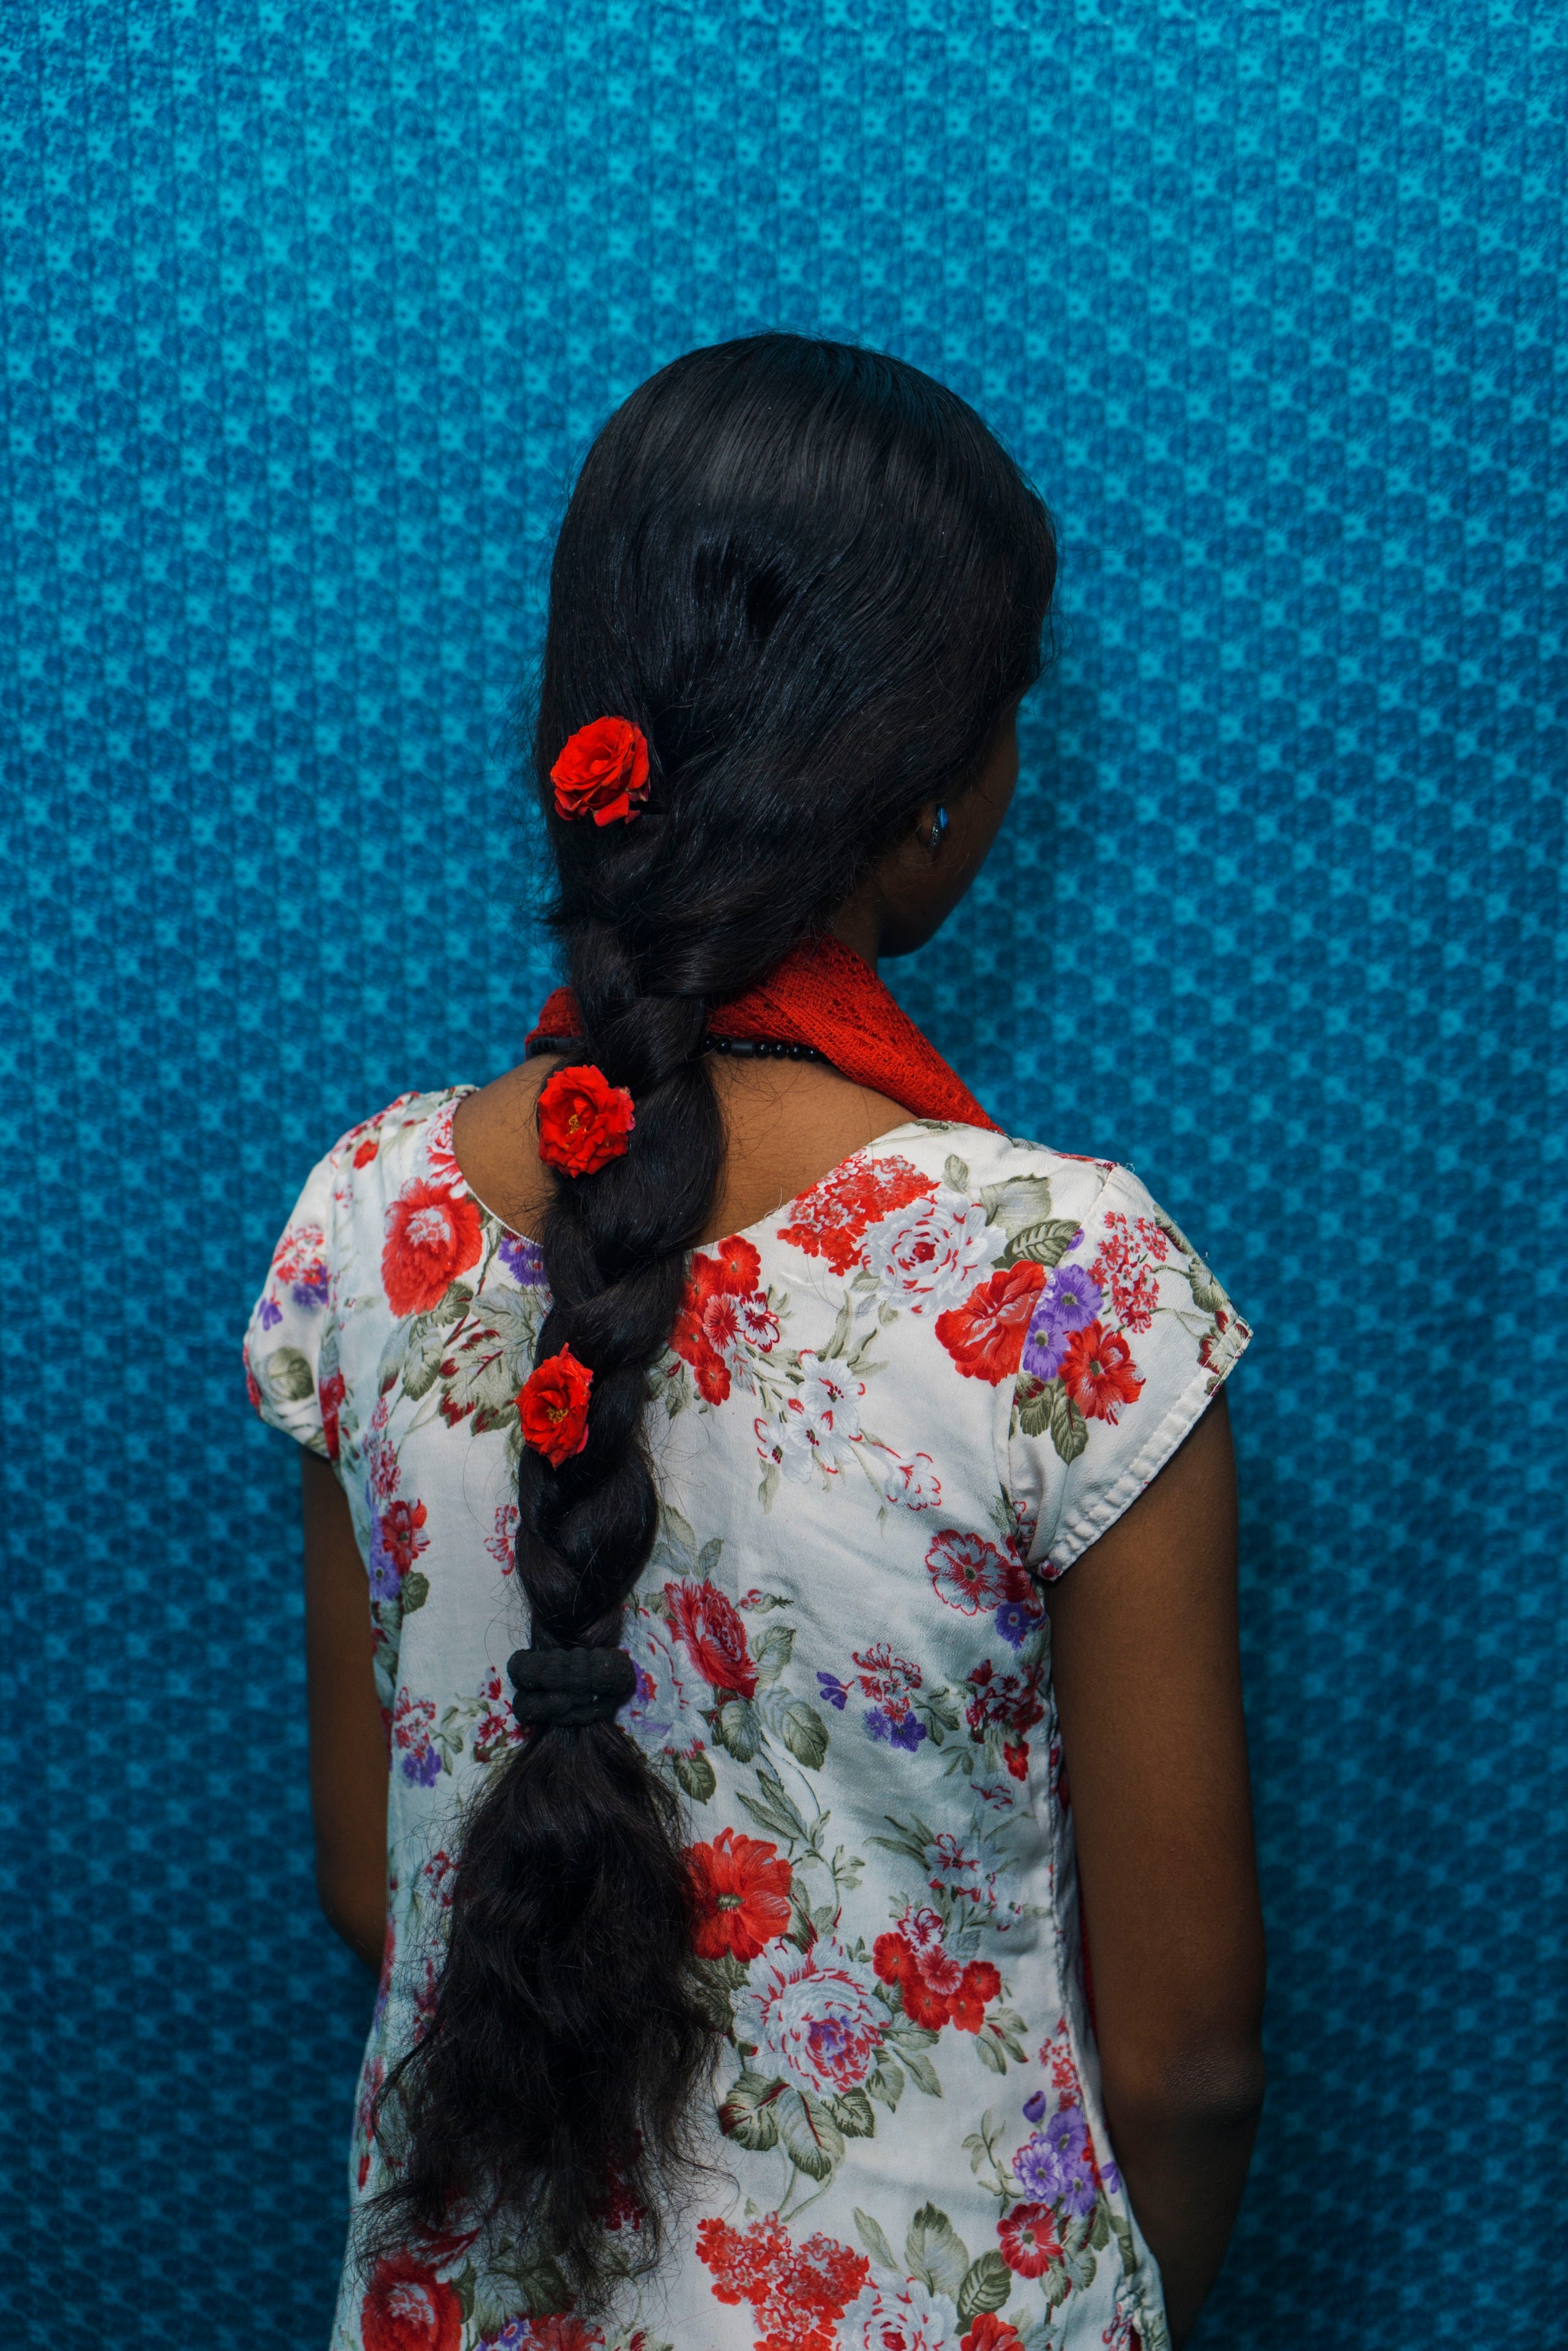 Tratamento à base de óleo nos cabelos é uma tradição secular indiana (Foto: Magnum Photos/ Vogue International)